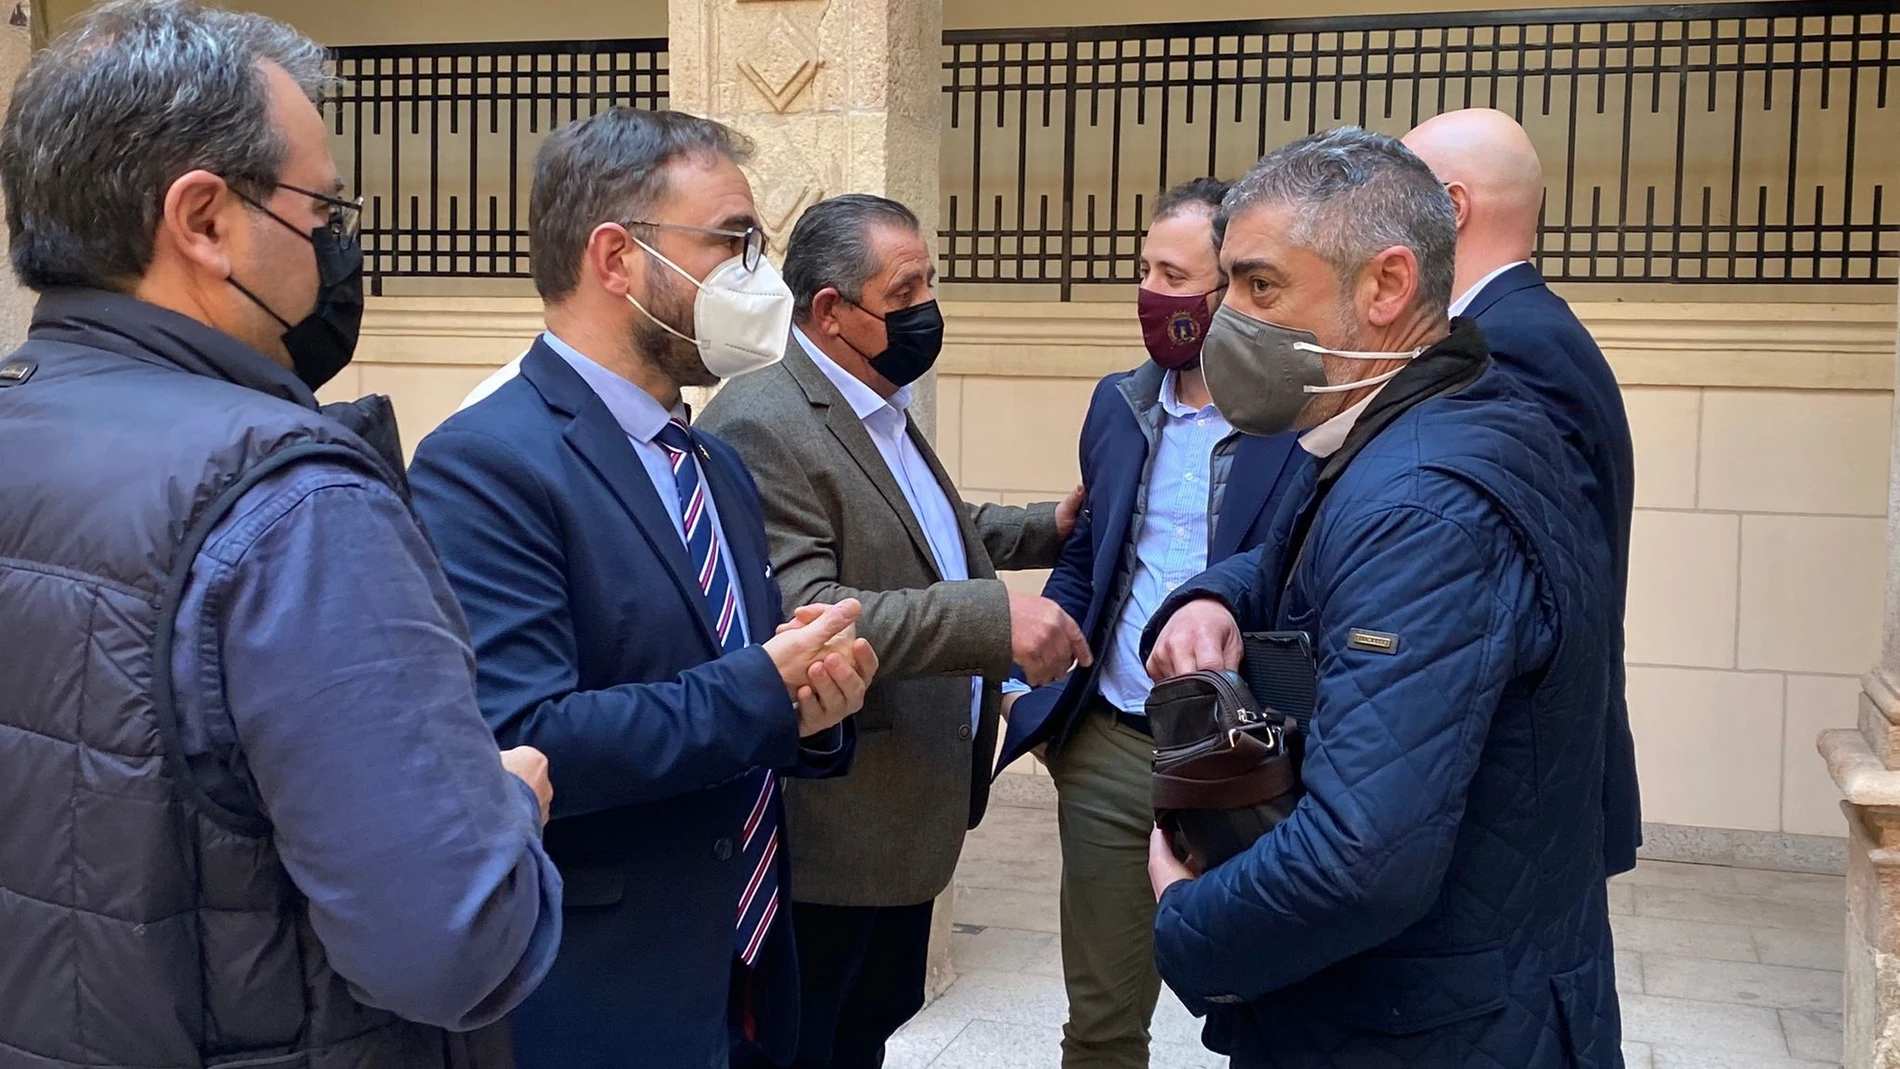 El alcalde de Lorca junto a miembros de la Mesa Negociadora sobre Ganadería Porcina